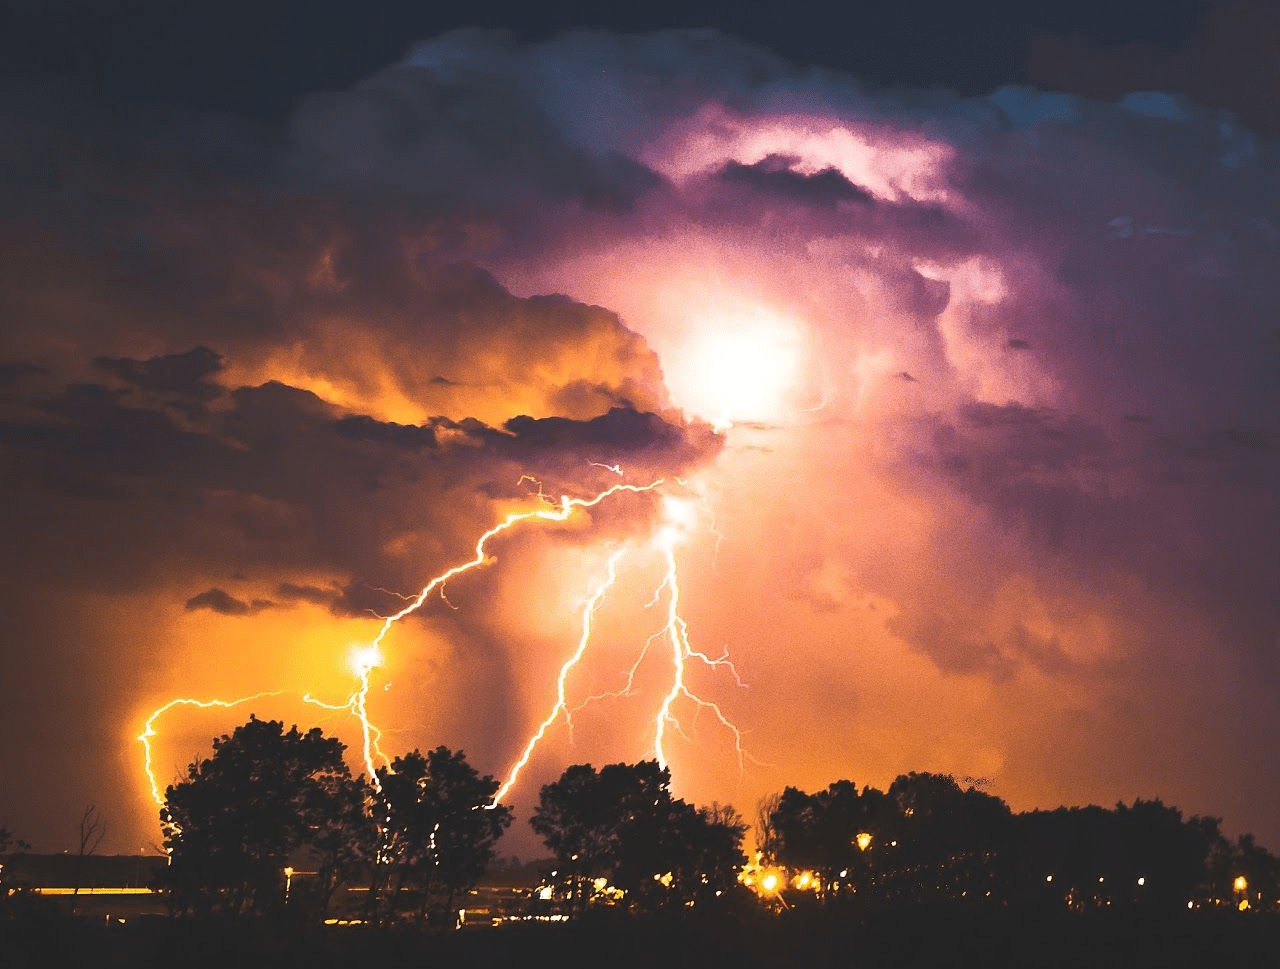 lightning strike over lake at night